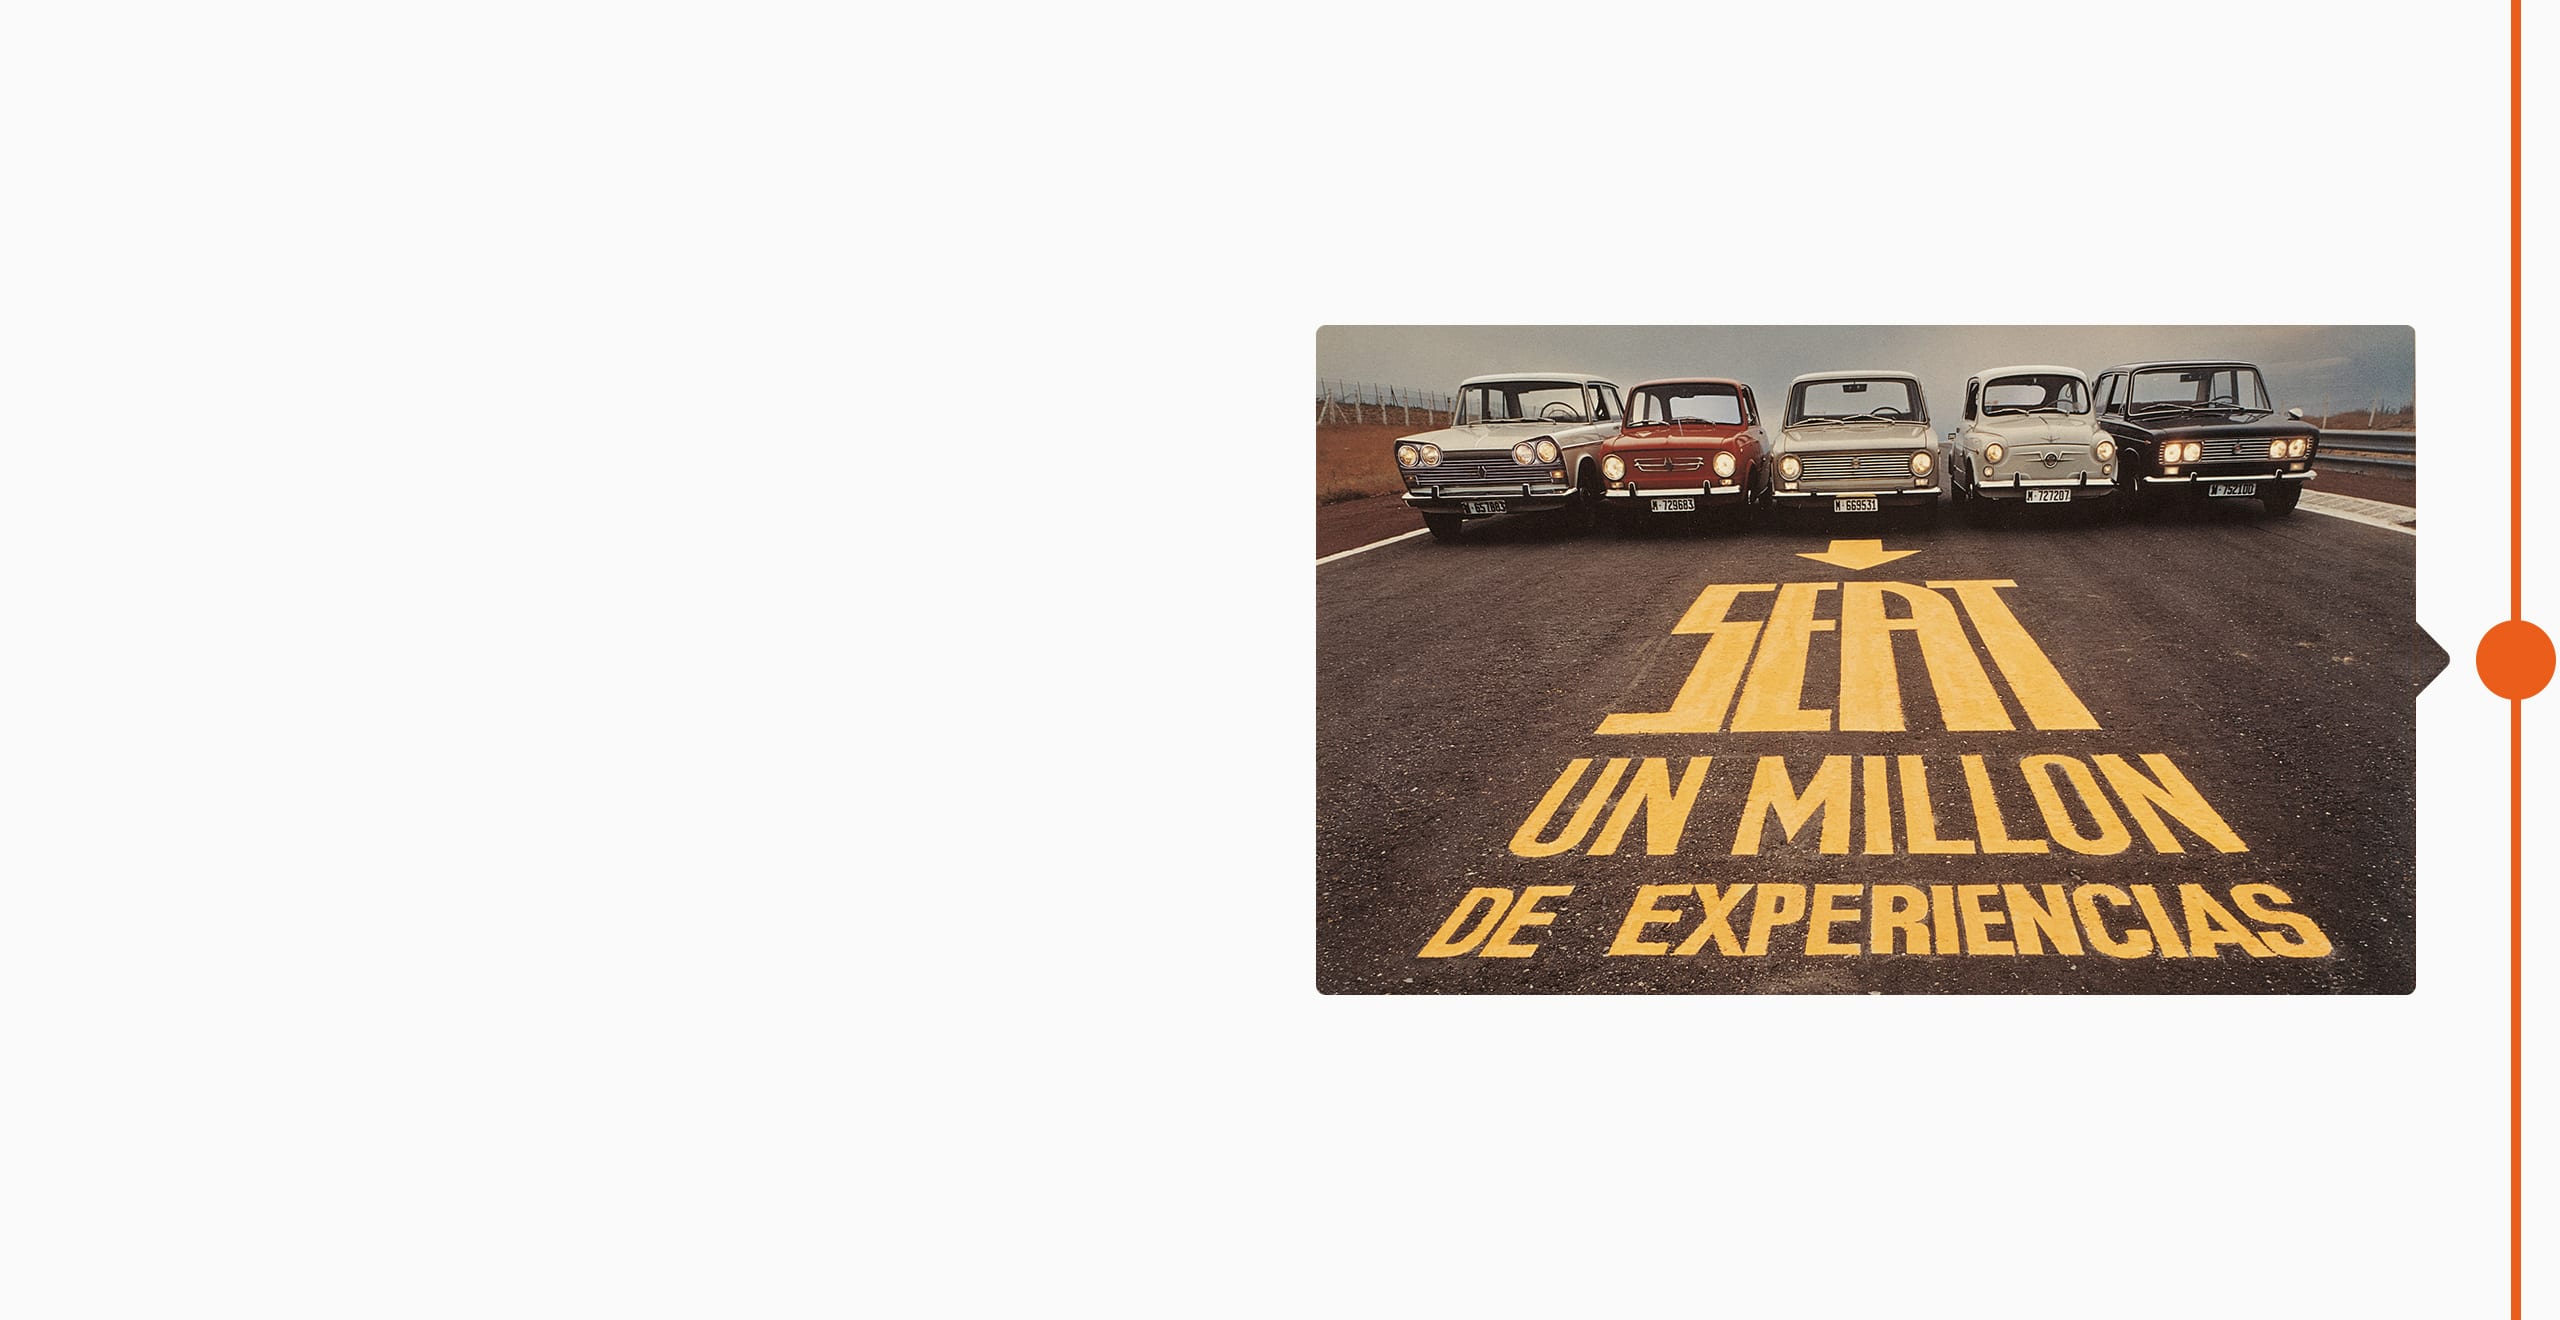 La storia del marchio SEAT: 1974 - Cinque modelli classici allineati su una strada, un milione di esperienze